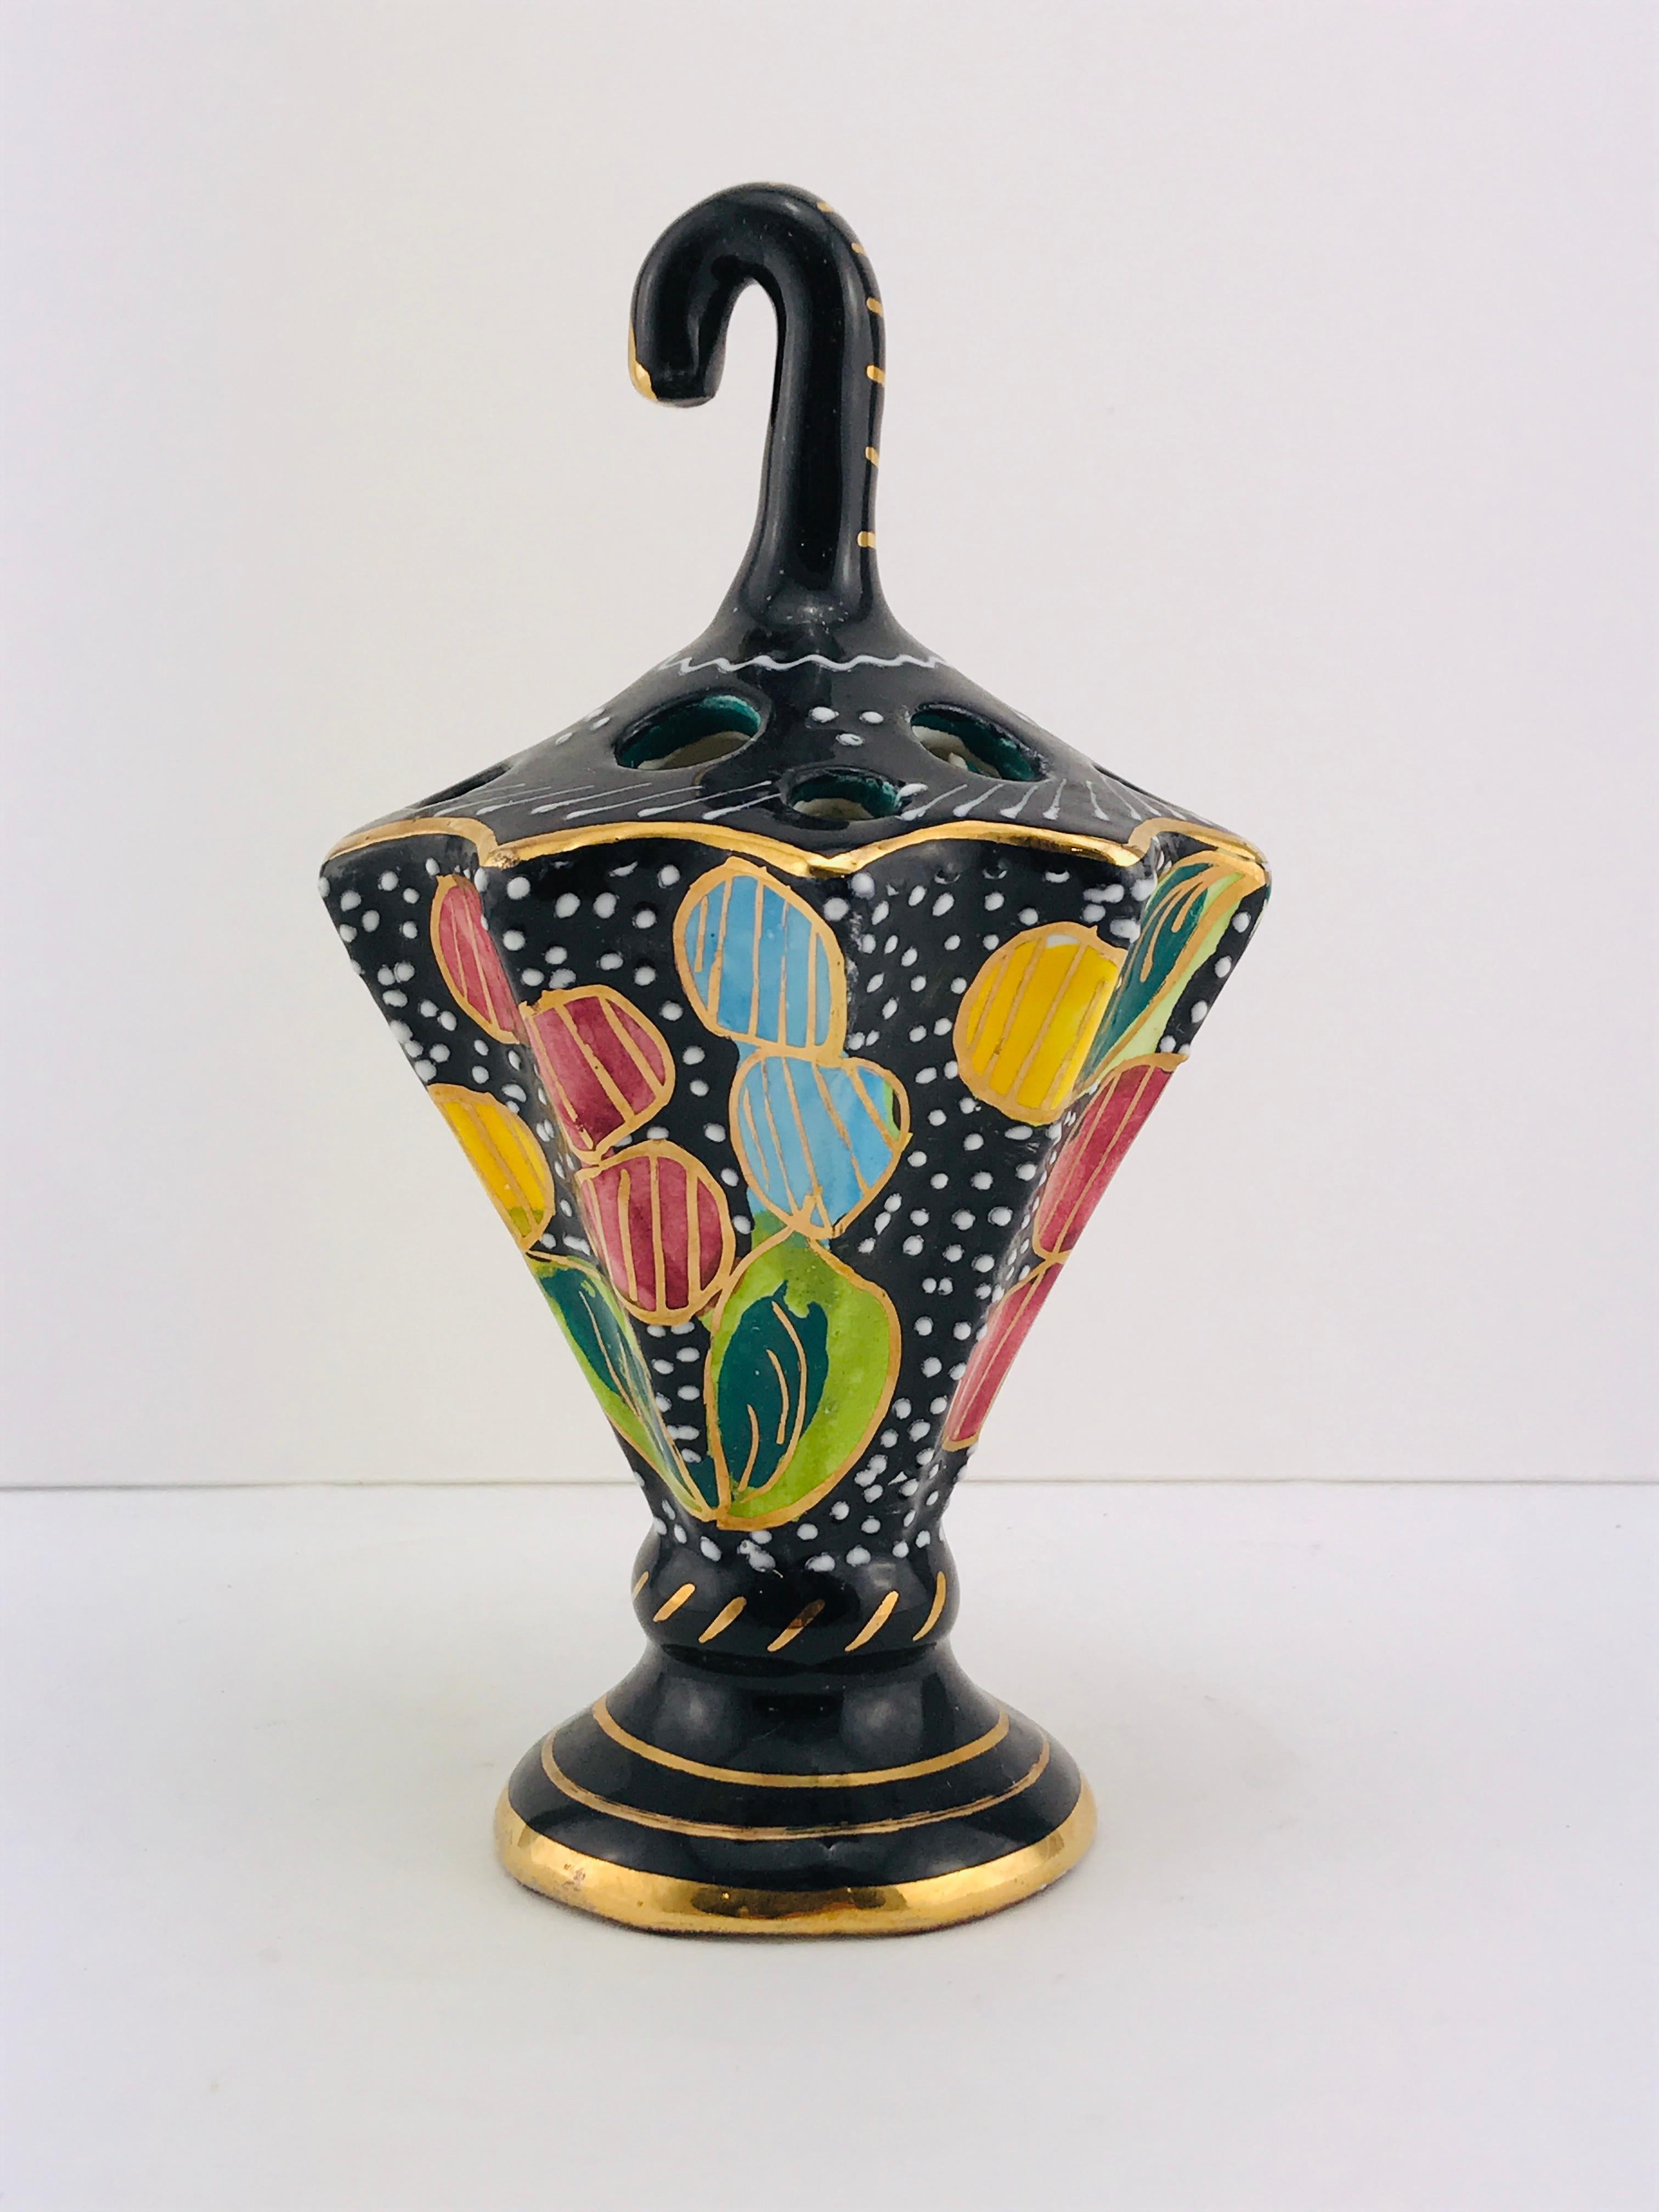 Belle céramique de Cima (Italie) probablement conçue comme porte-stylos, couleurs étonnantes et en très bon état.
  